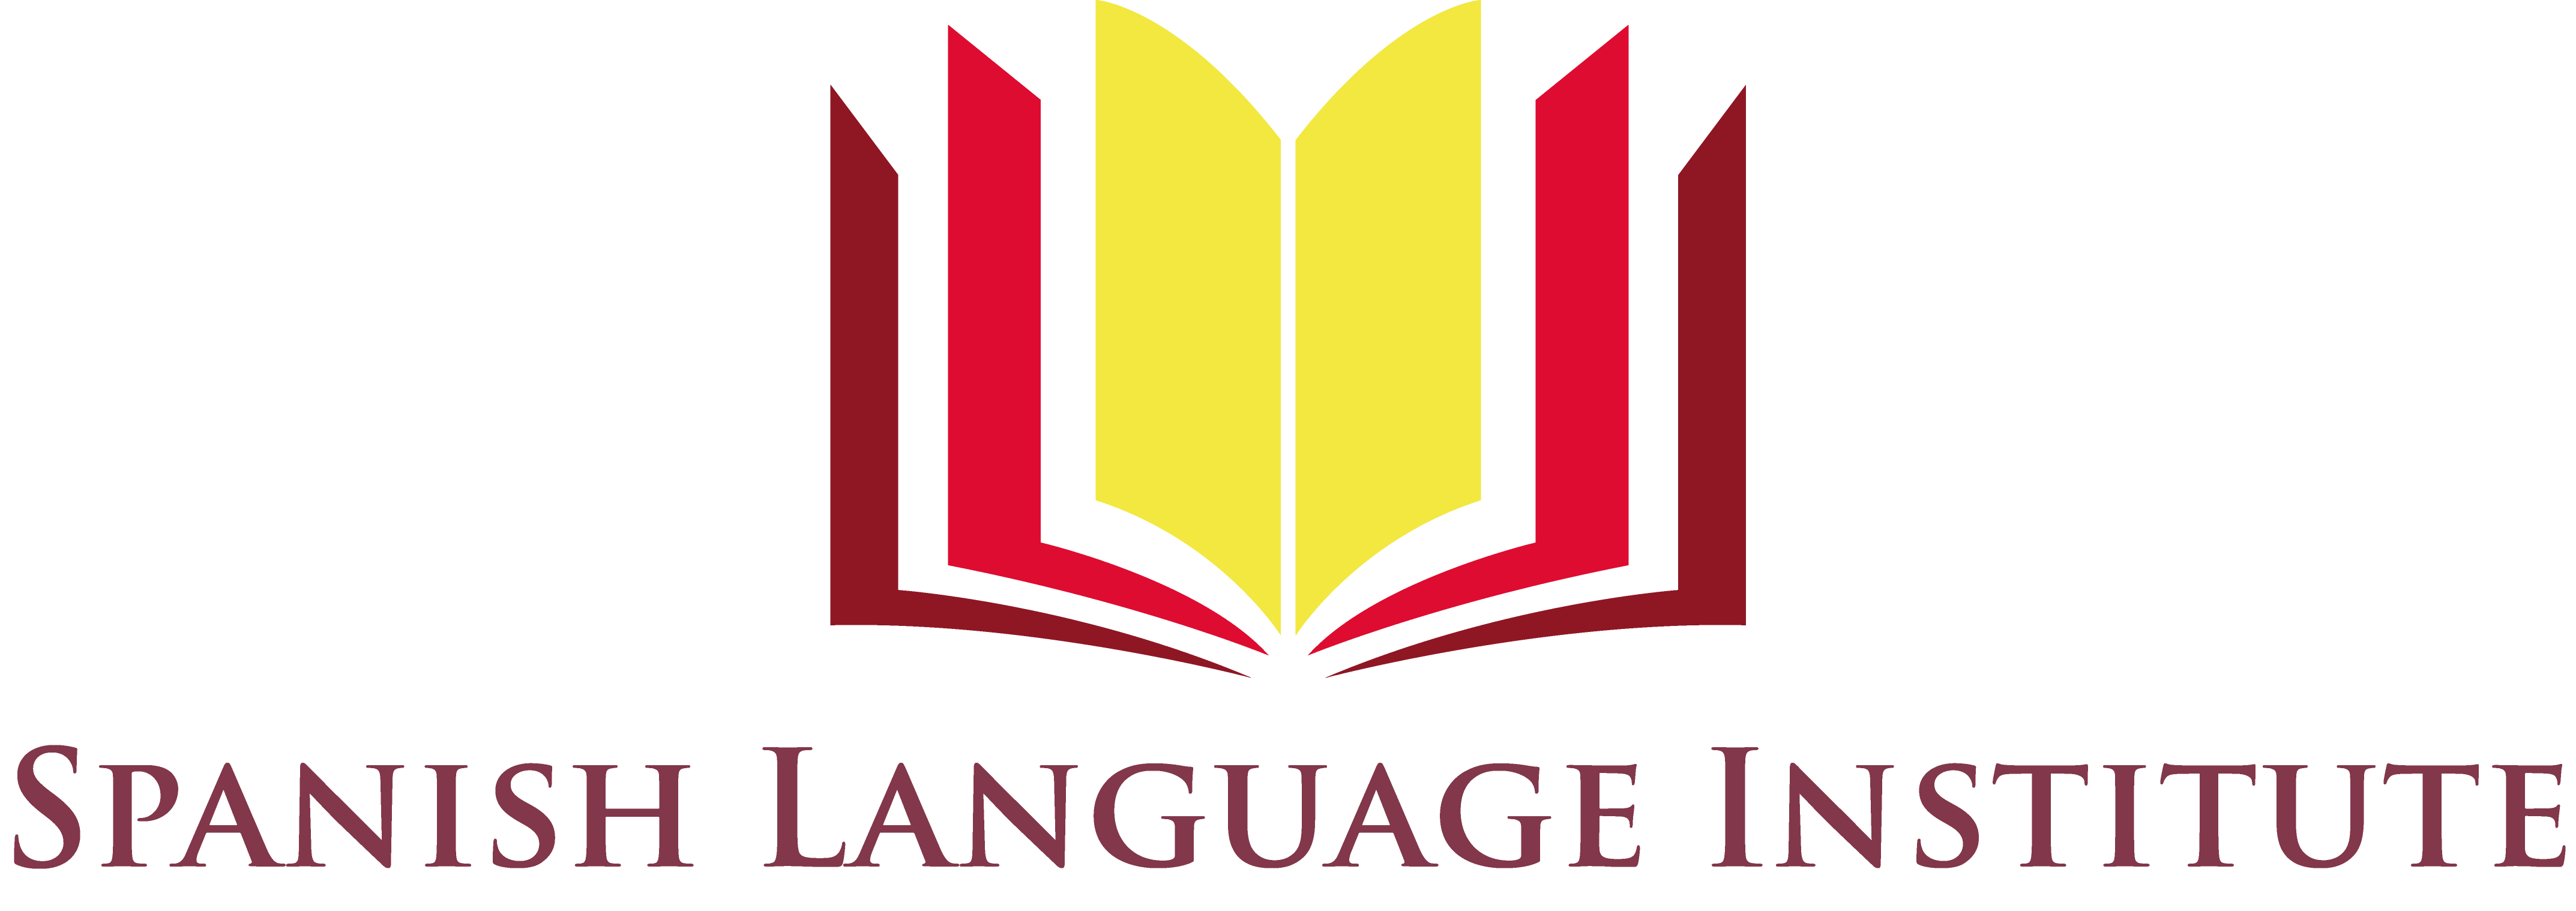 spanish-language-institute